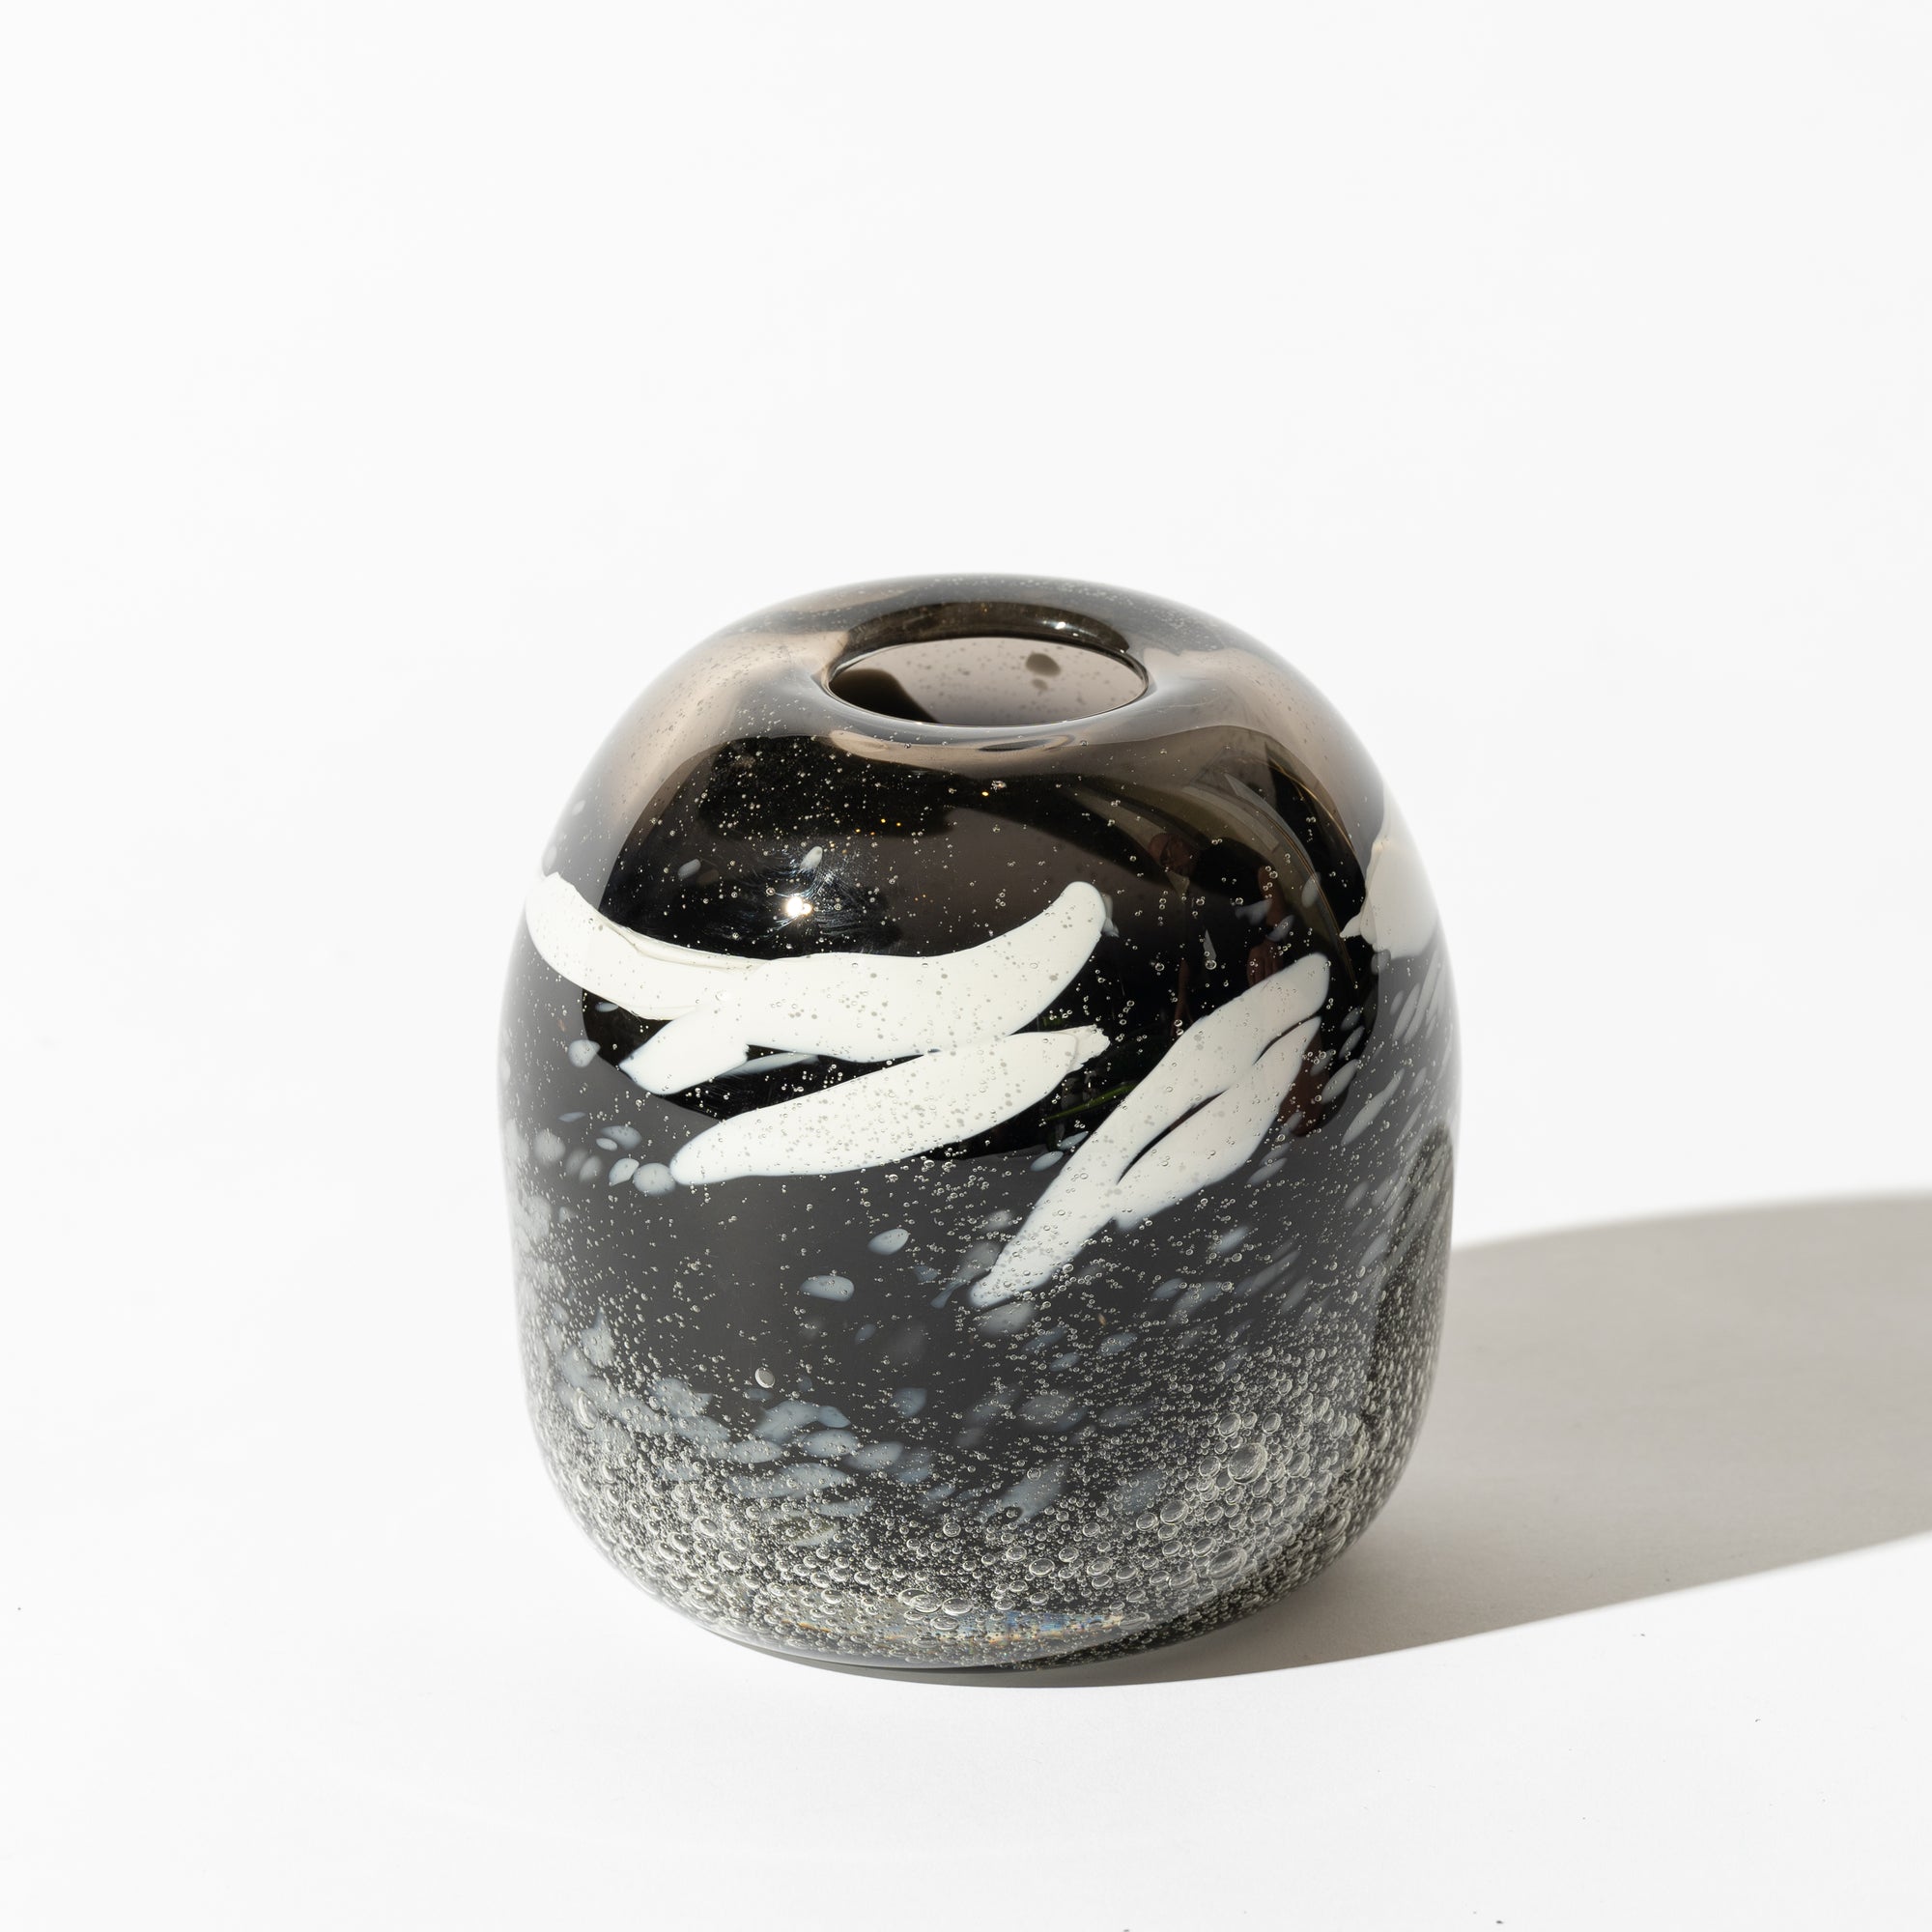 Emma Lashmar "Obsidian" Free-Blown Glass Orb (L)